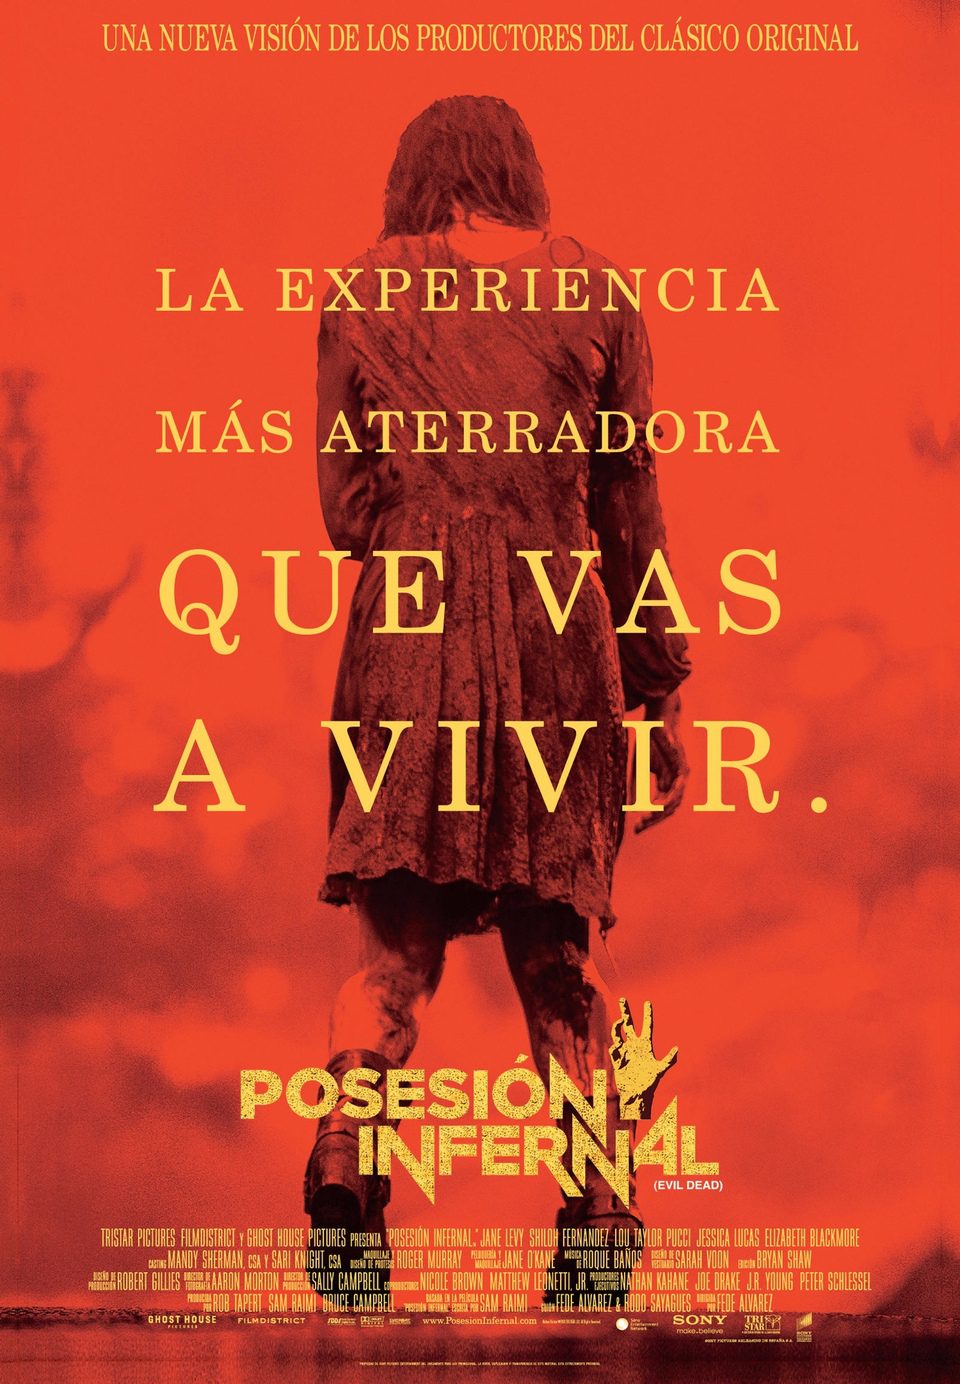 Cartel de Posesión infernal (Evil Dead) - España